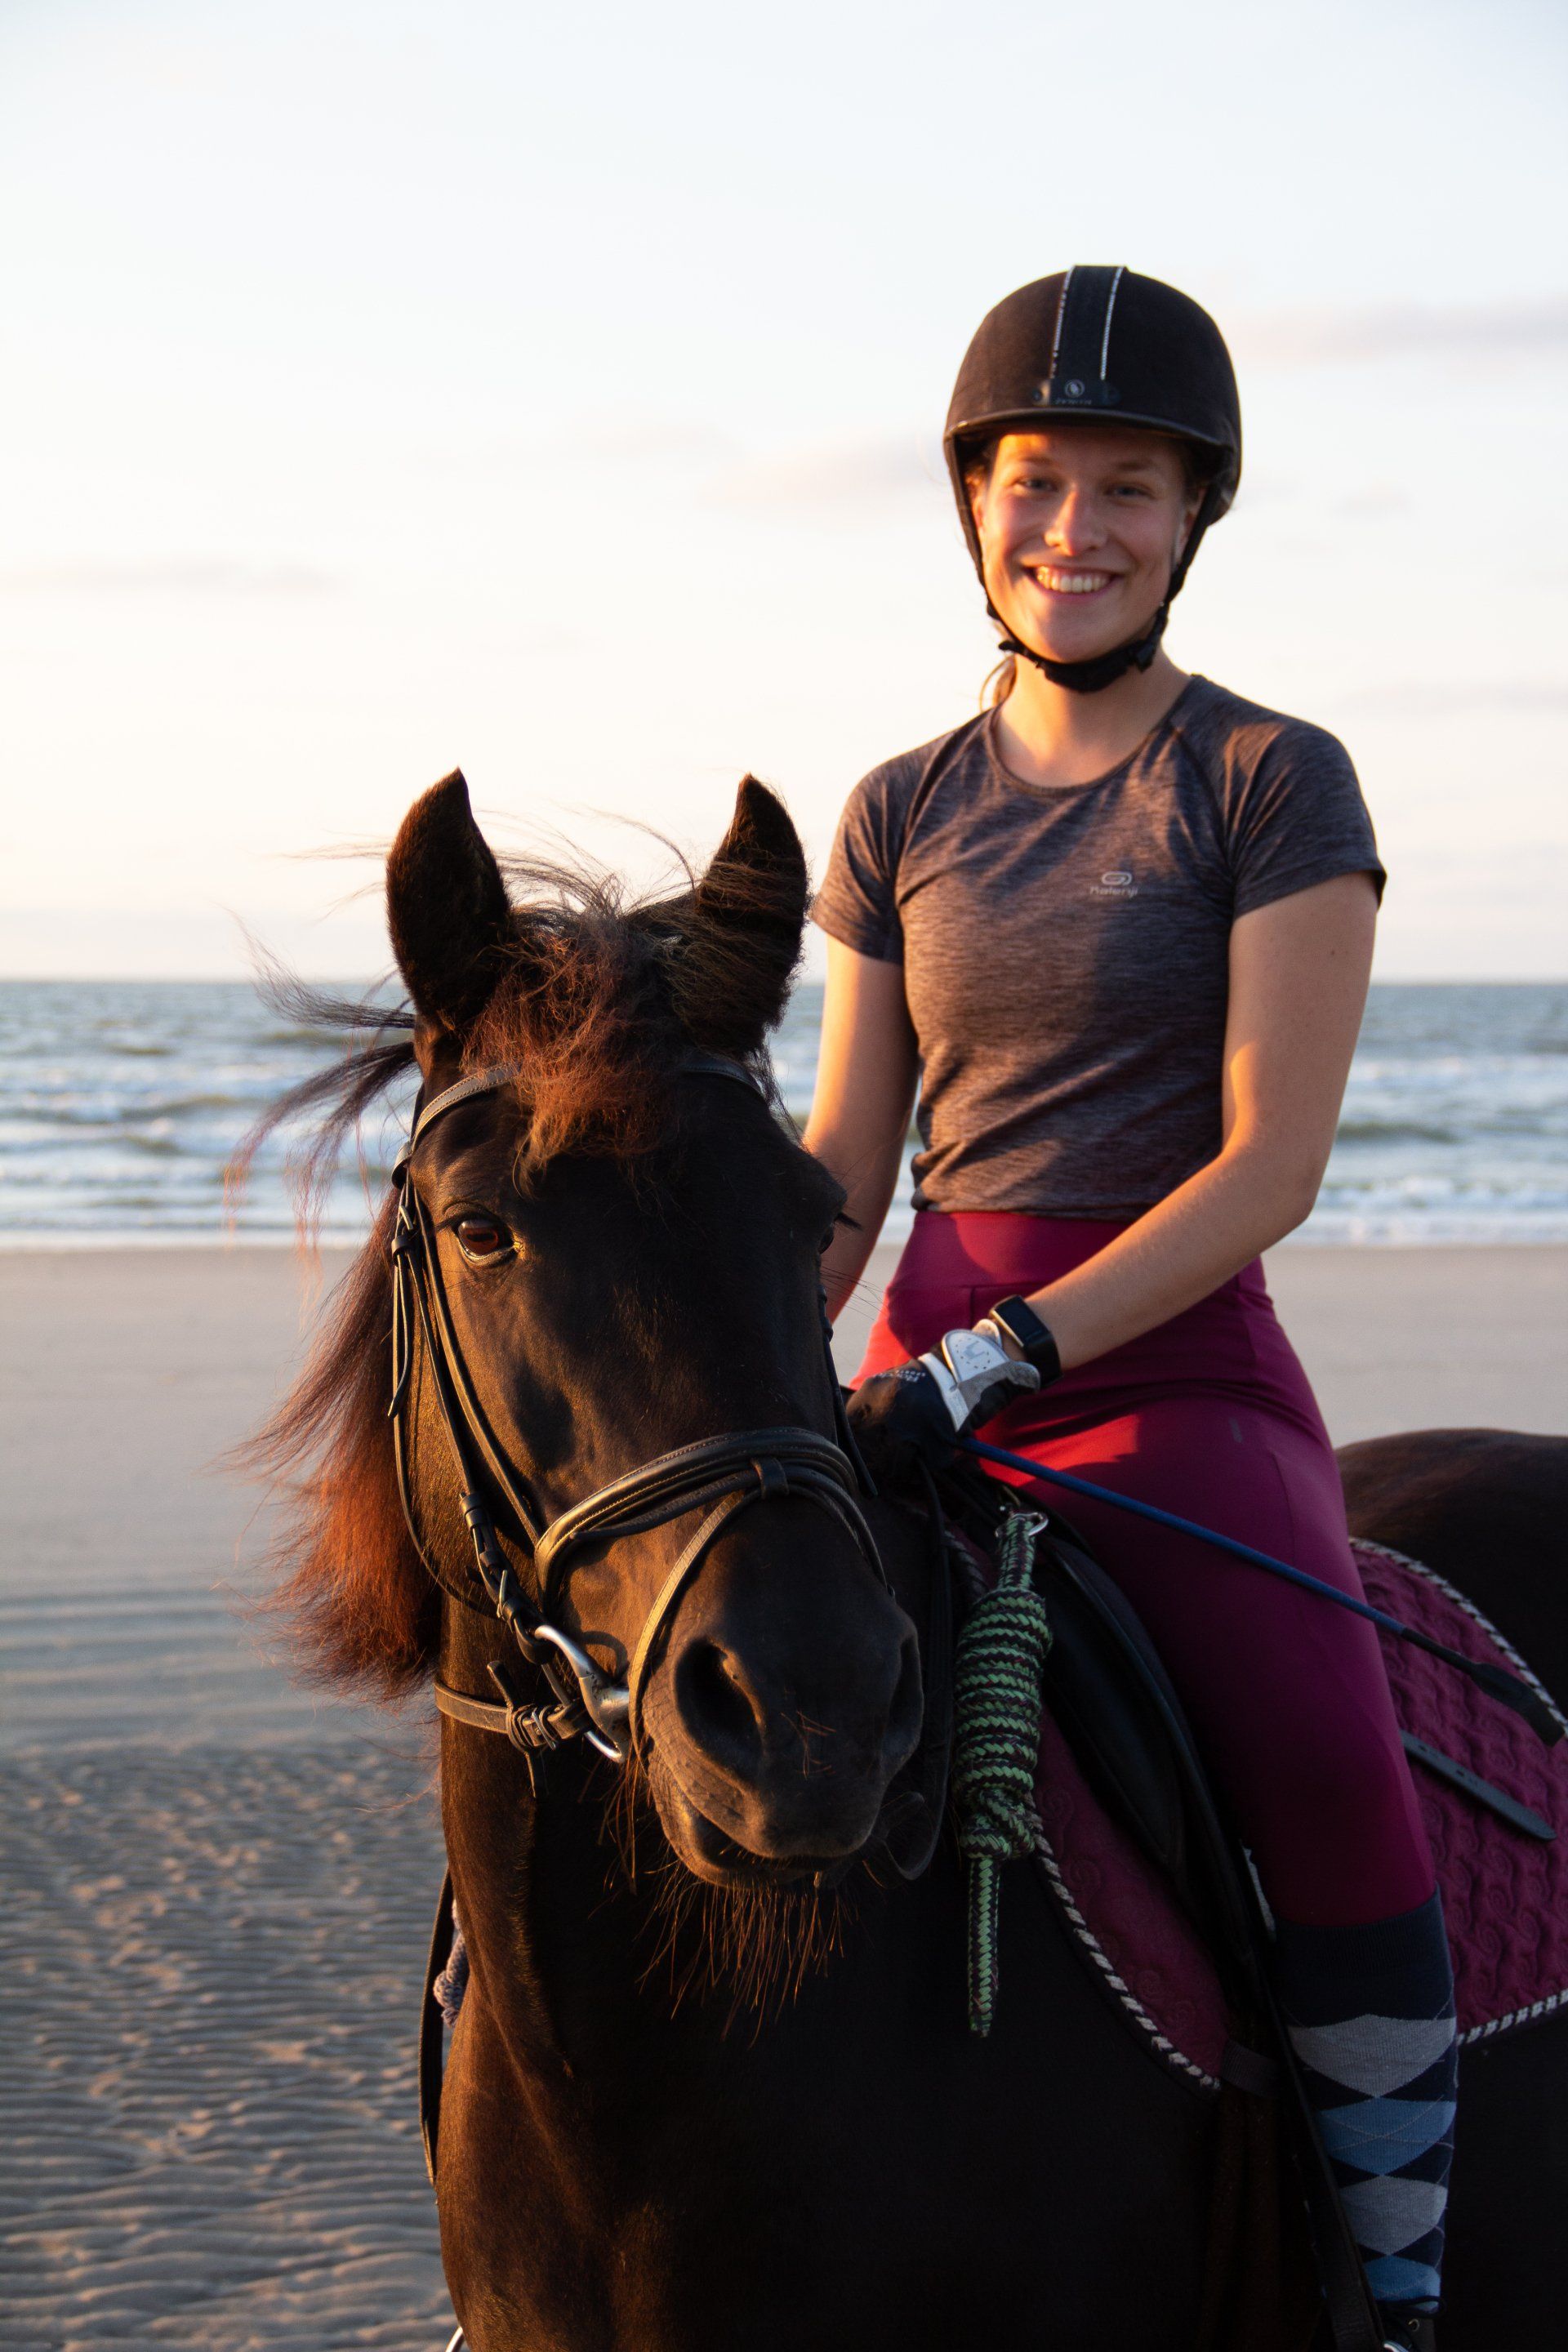 Must-have voor buiten paardrijden: rijbroek met telefoonzakje